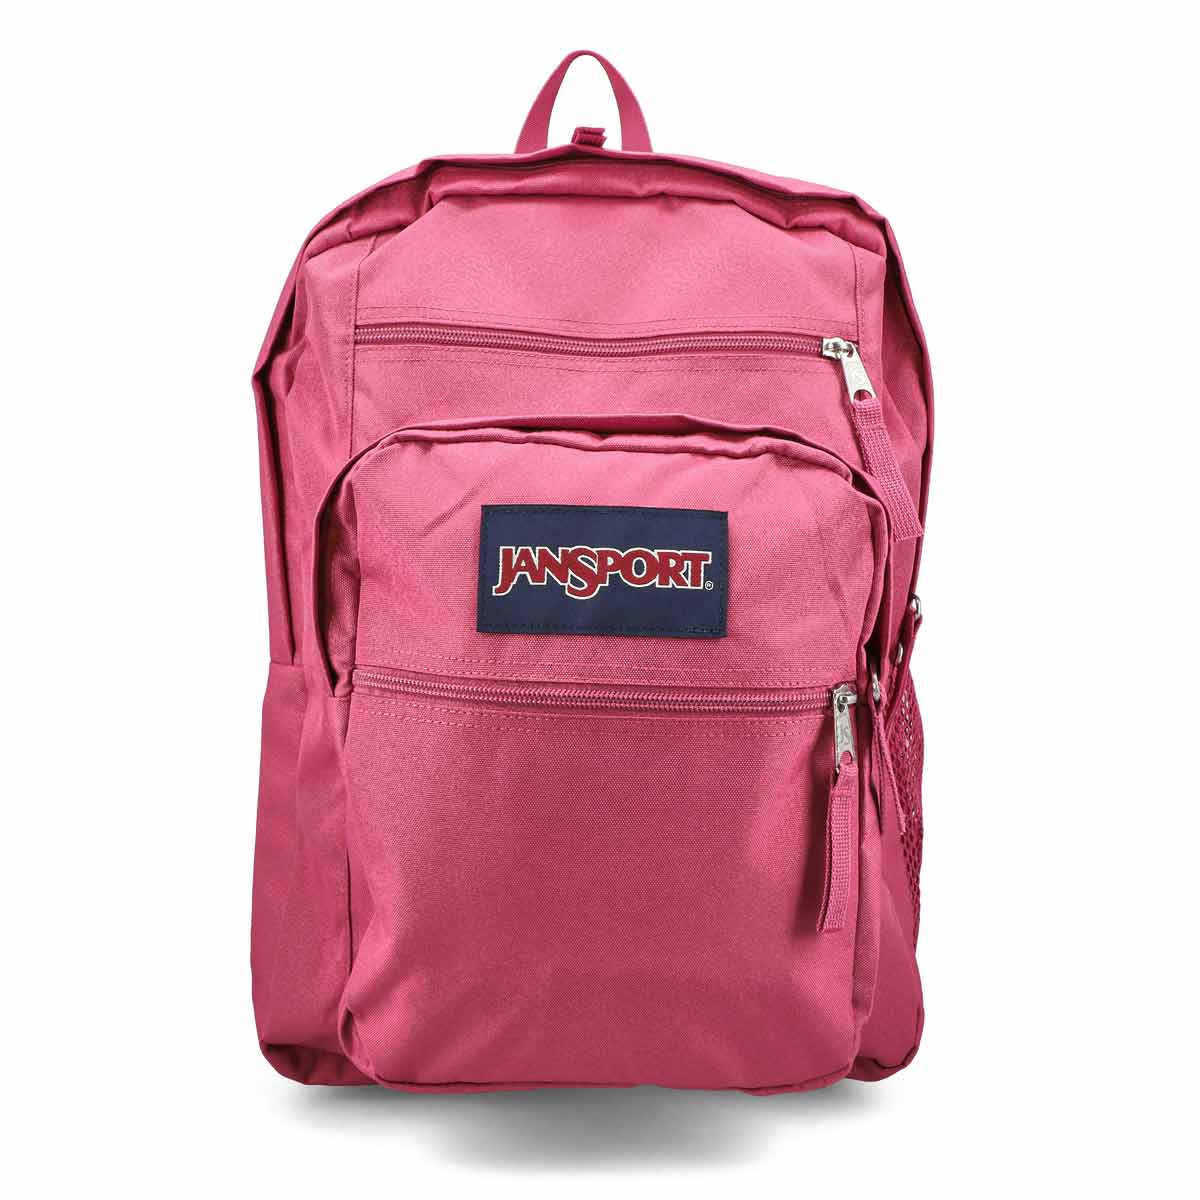 Jansport Big Student Backpack - Mauve Haze